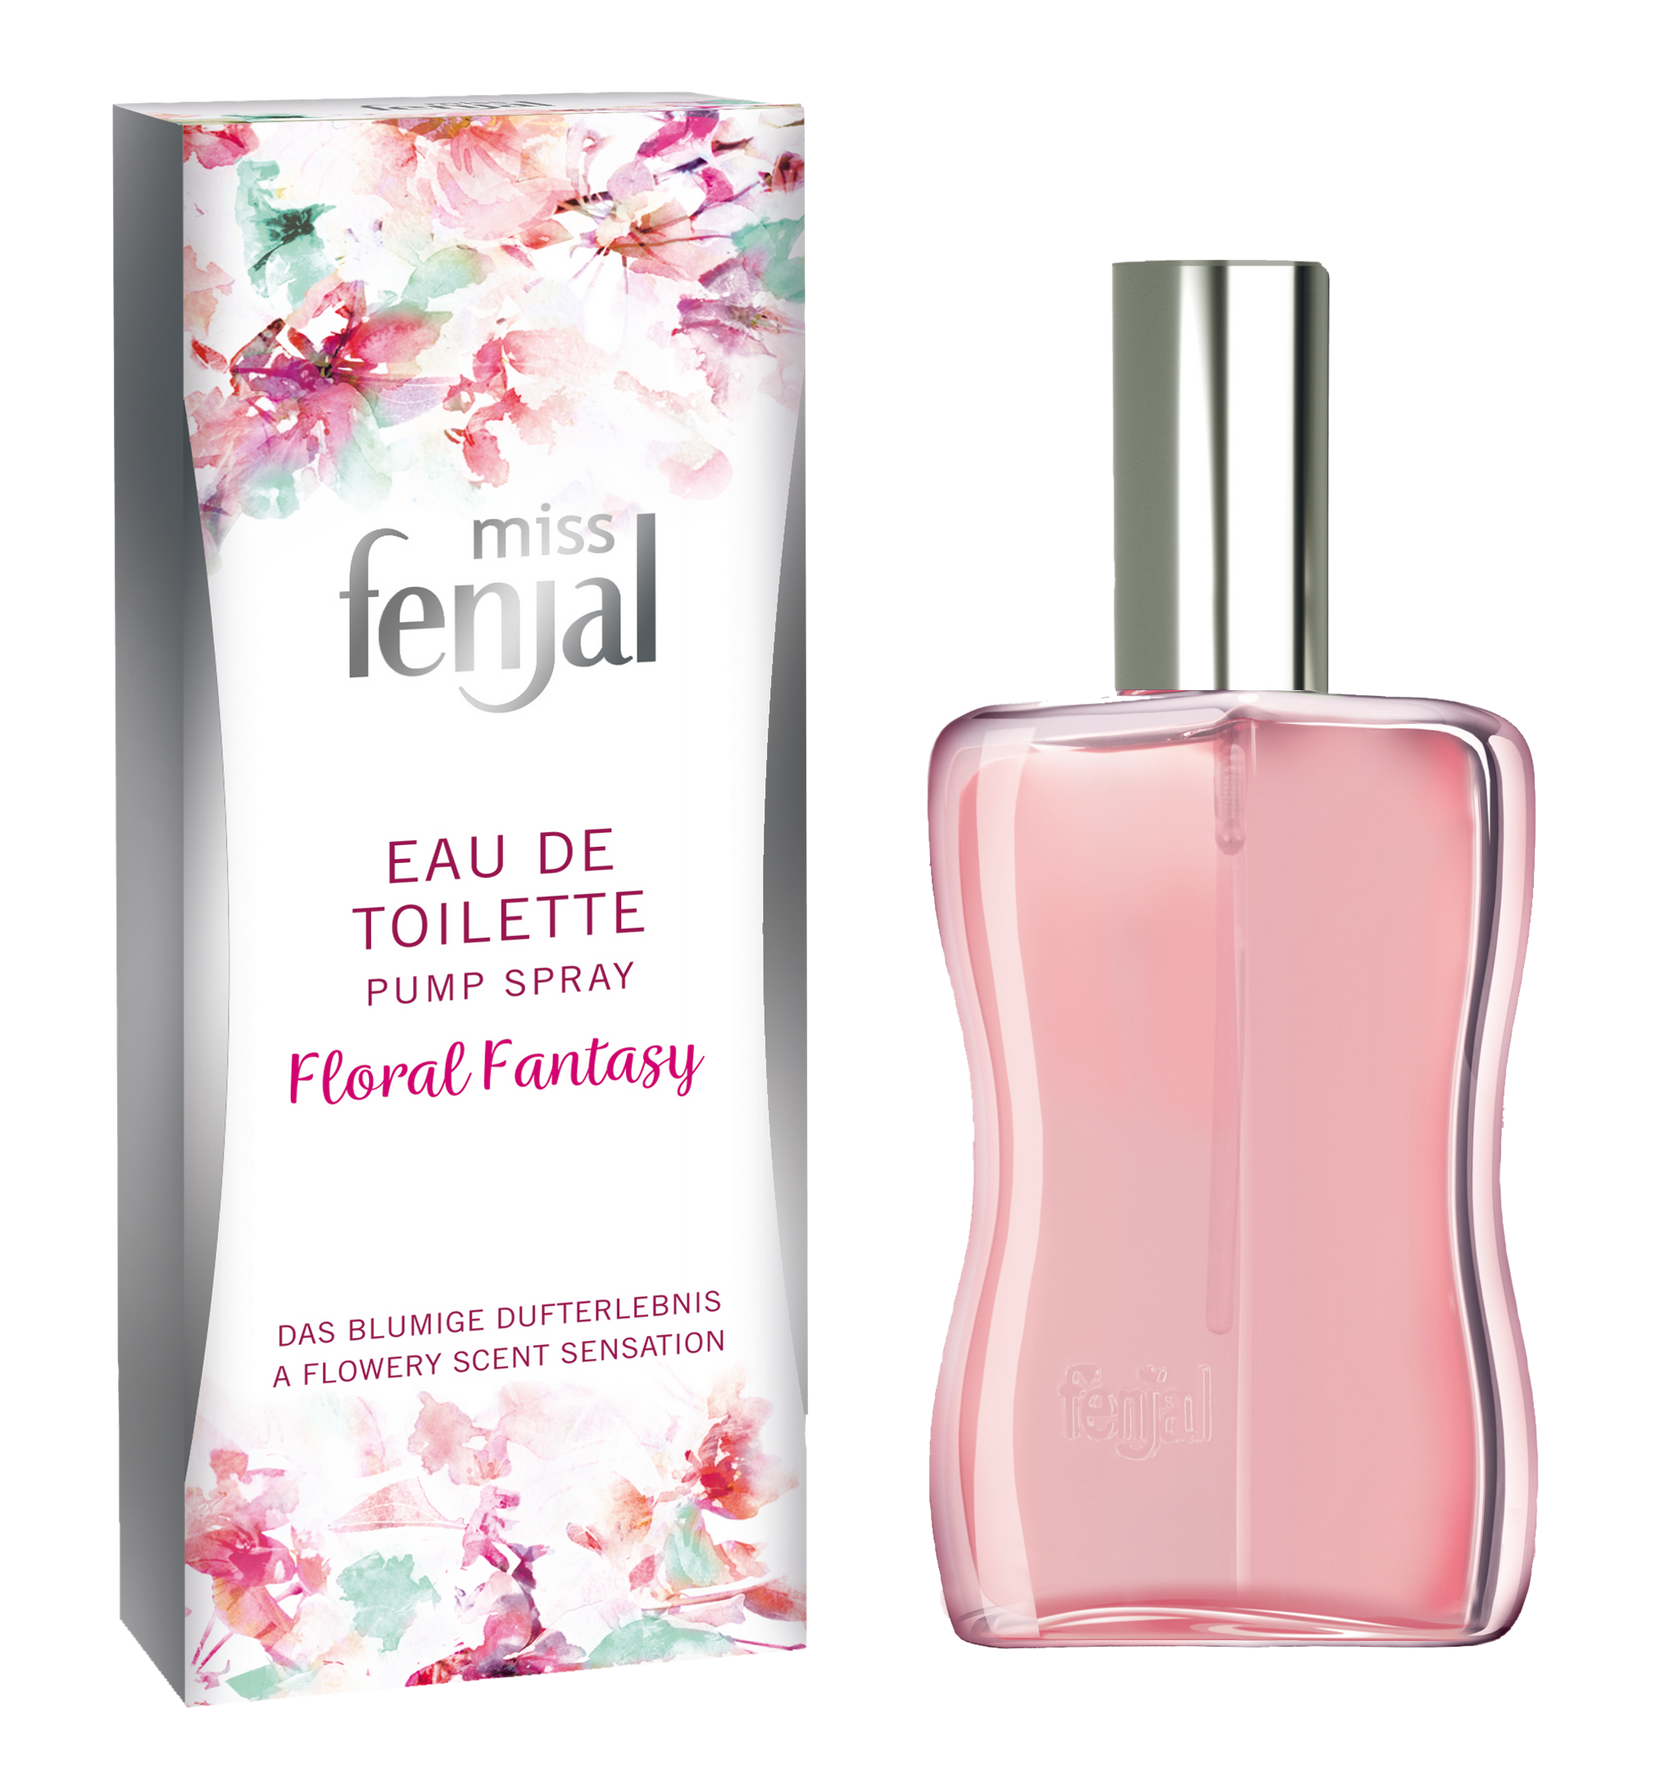 Miss fenjal EdT Floral Fantasy 50 ml, Fenjal